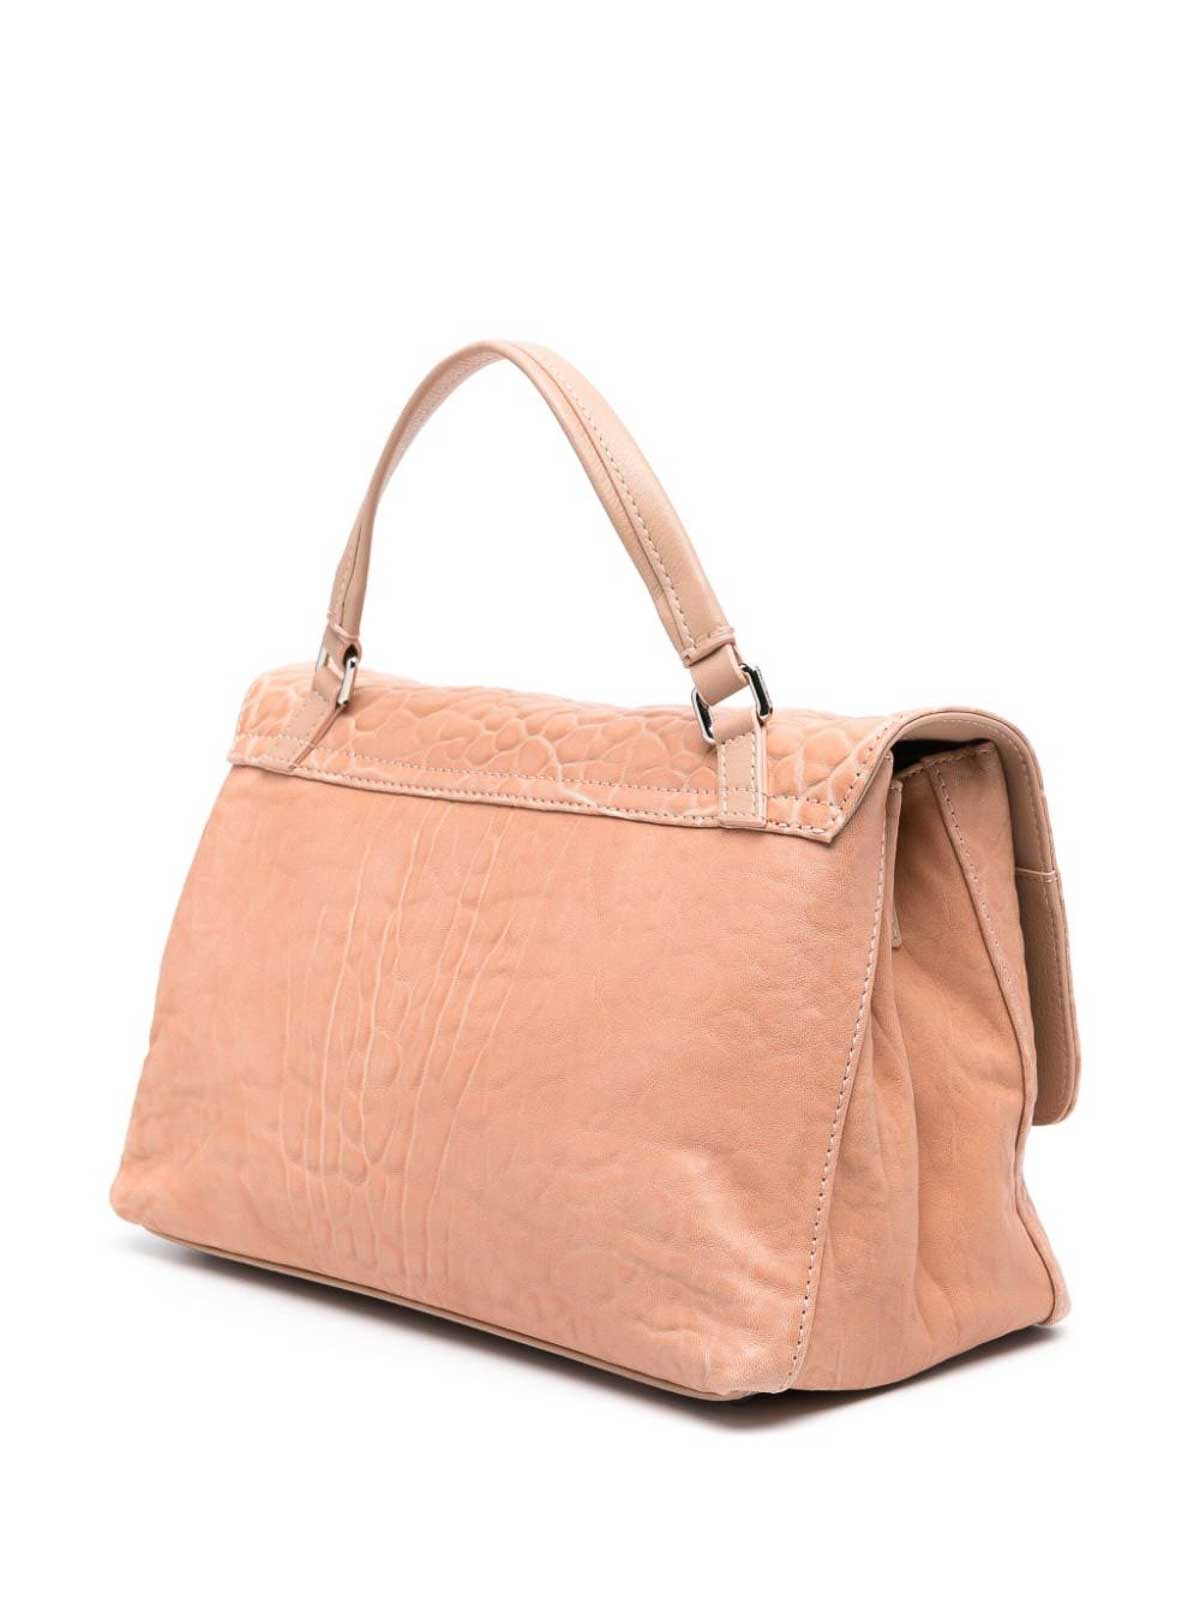 Shop Zanellato Postina S Leather Handbag In Rosado Claro